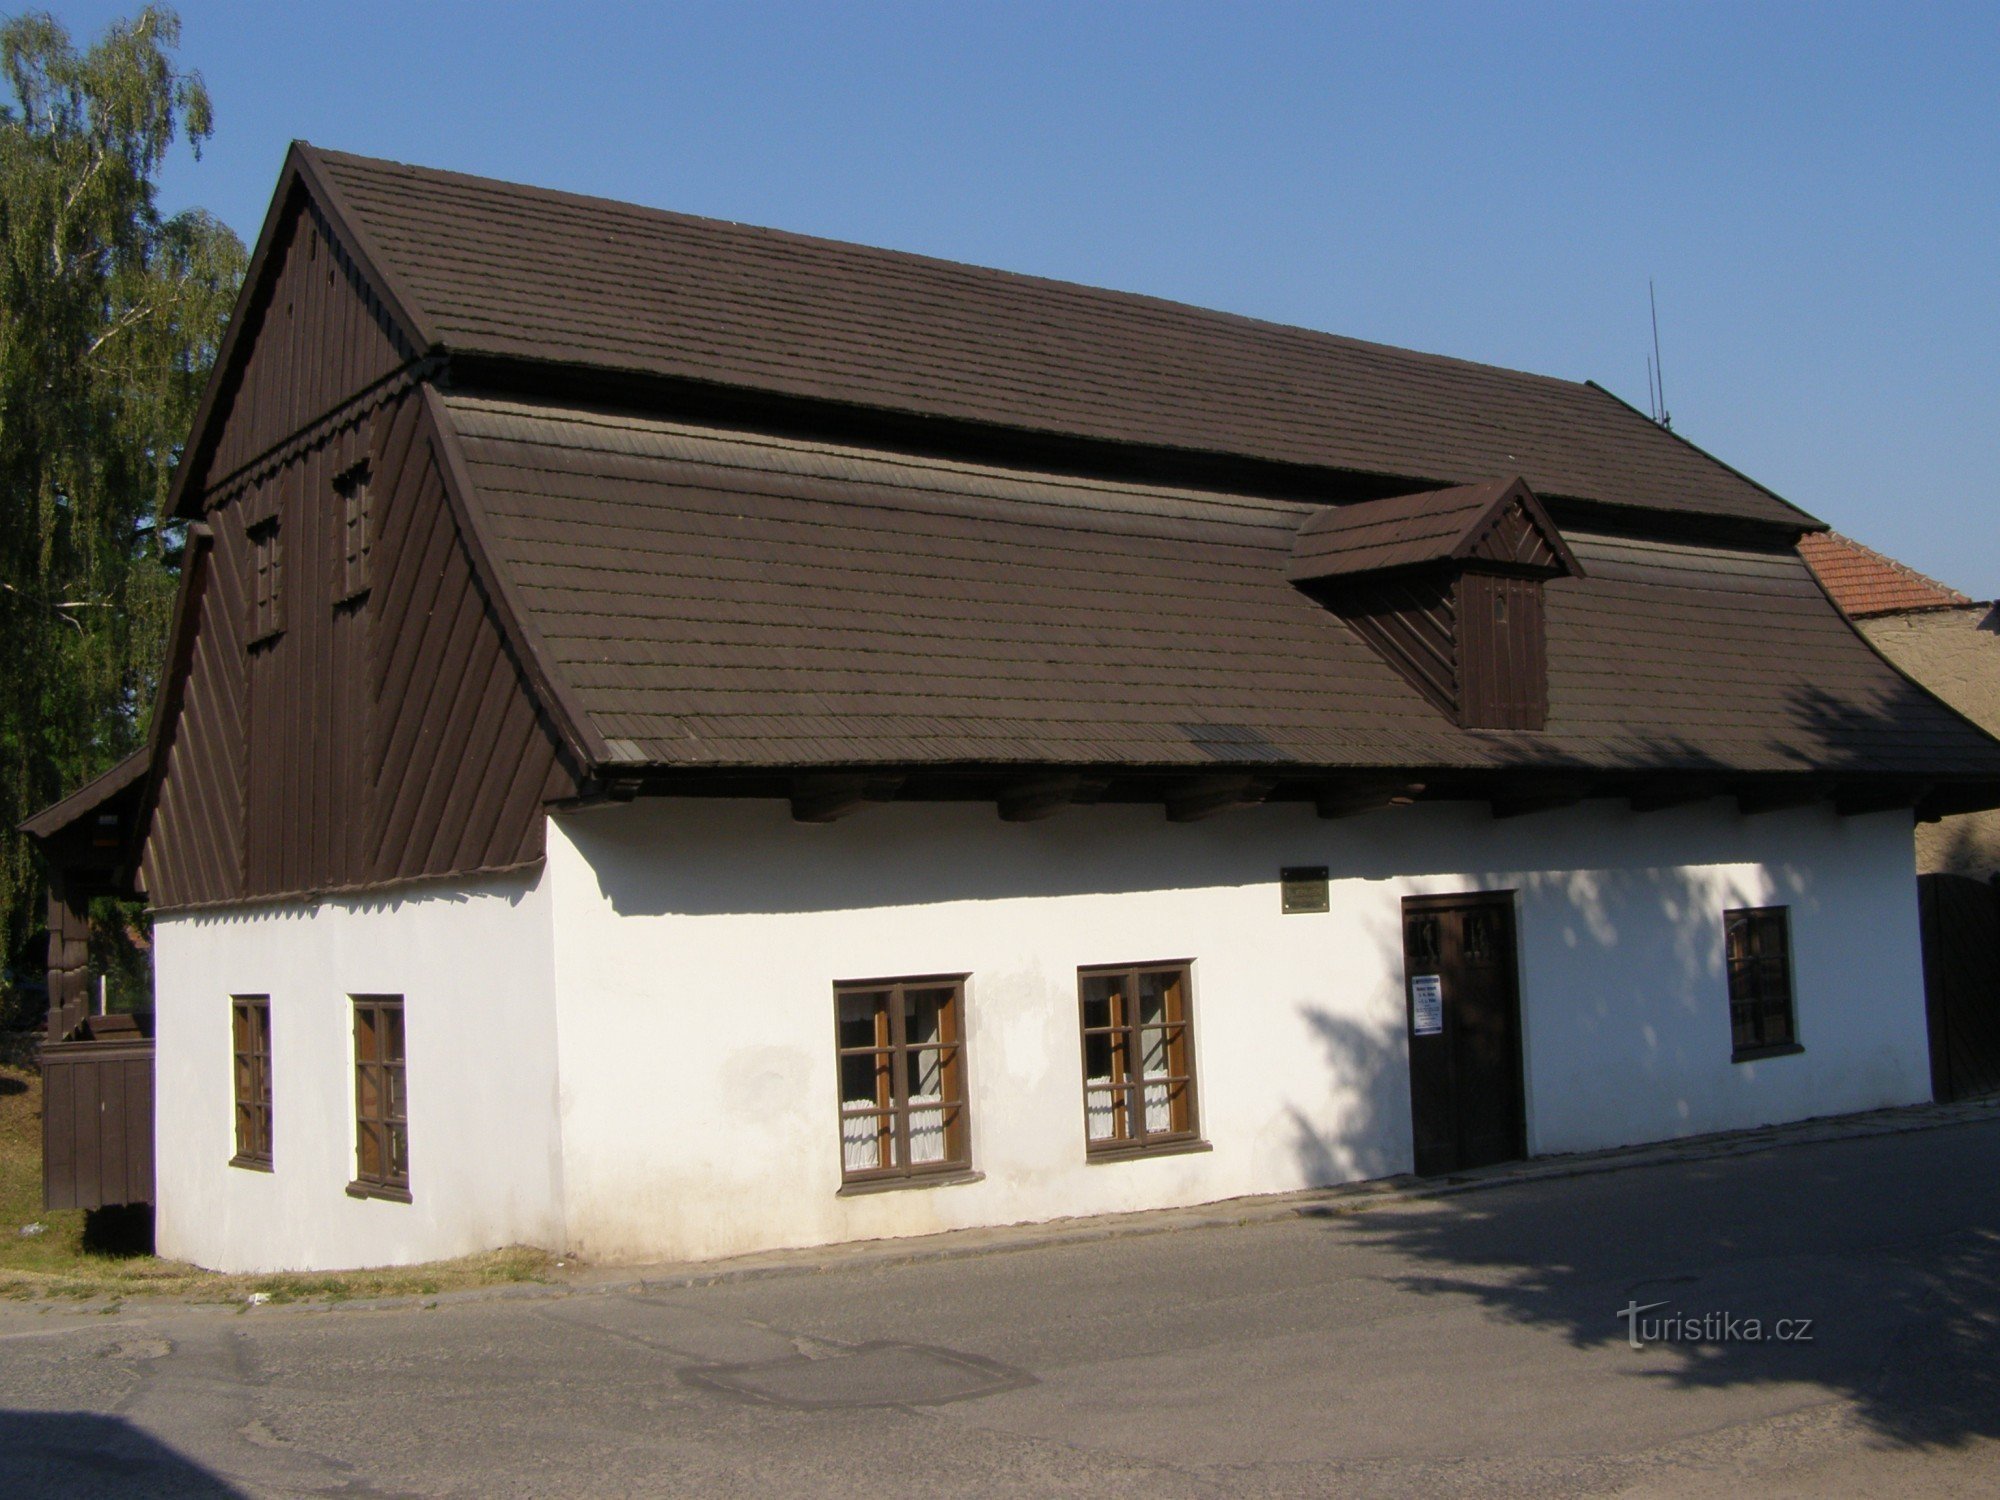 Dobruška - der Geburtsort von FLVěk (Heka)